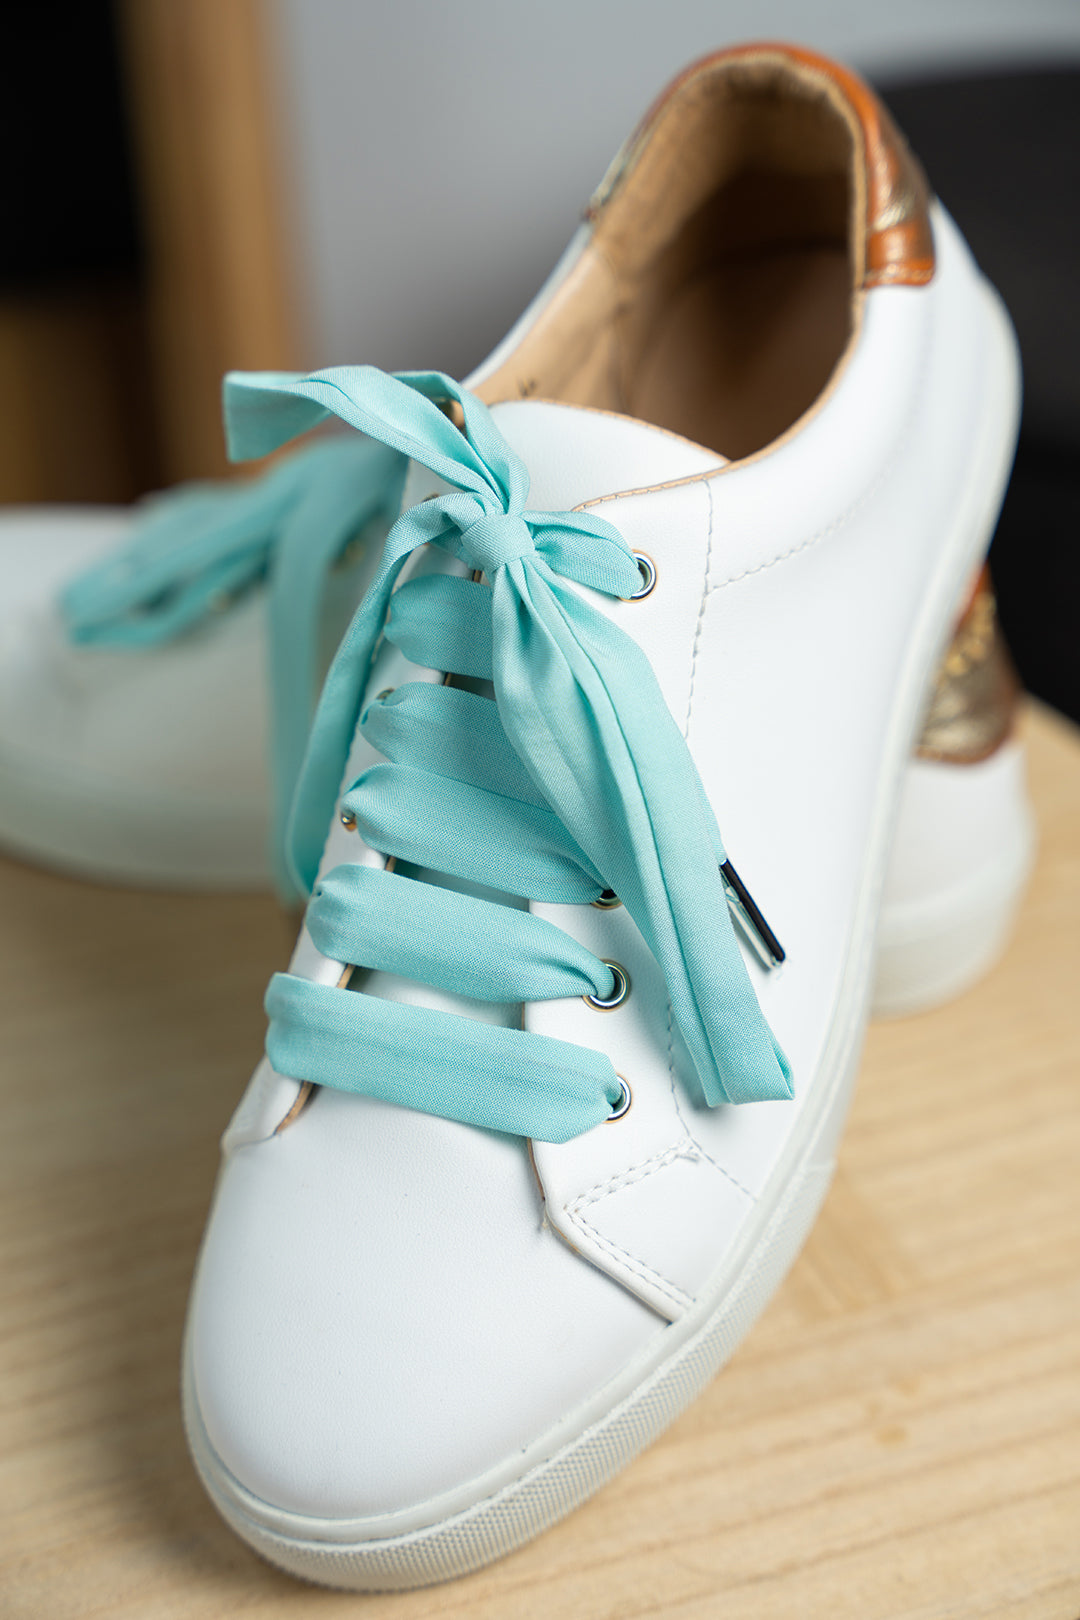 Lacets unis menthe - Lacets originaux chaussures | Mon Lacet Français